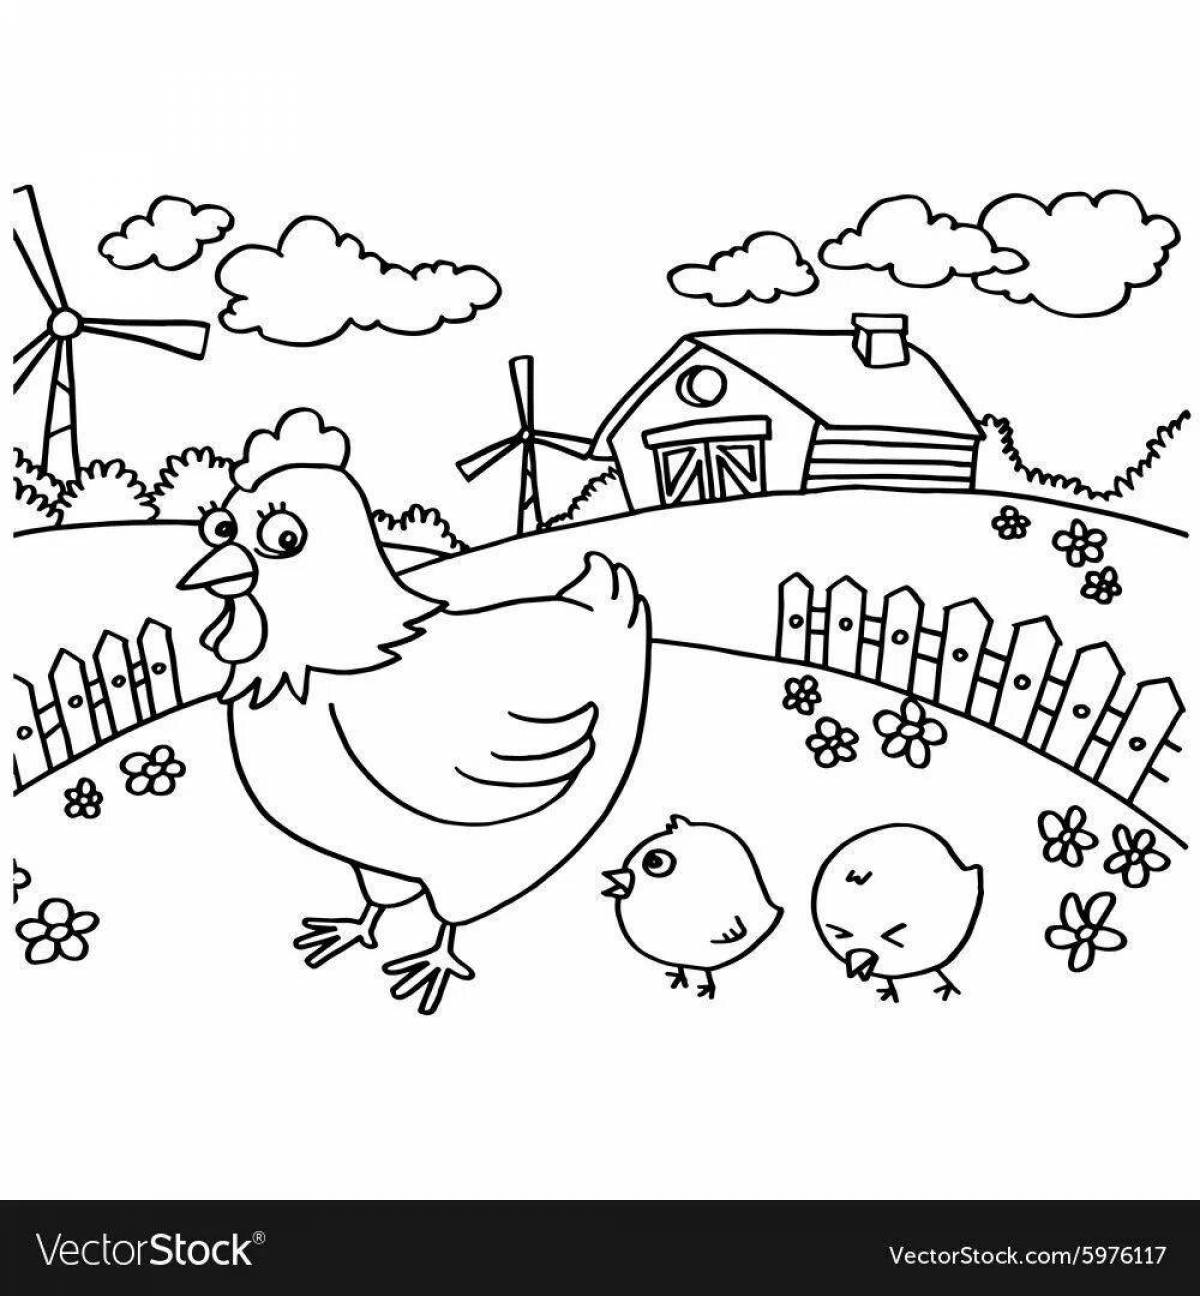 Яркая страница раскраски птичьего двора для детей